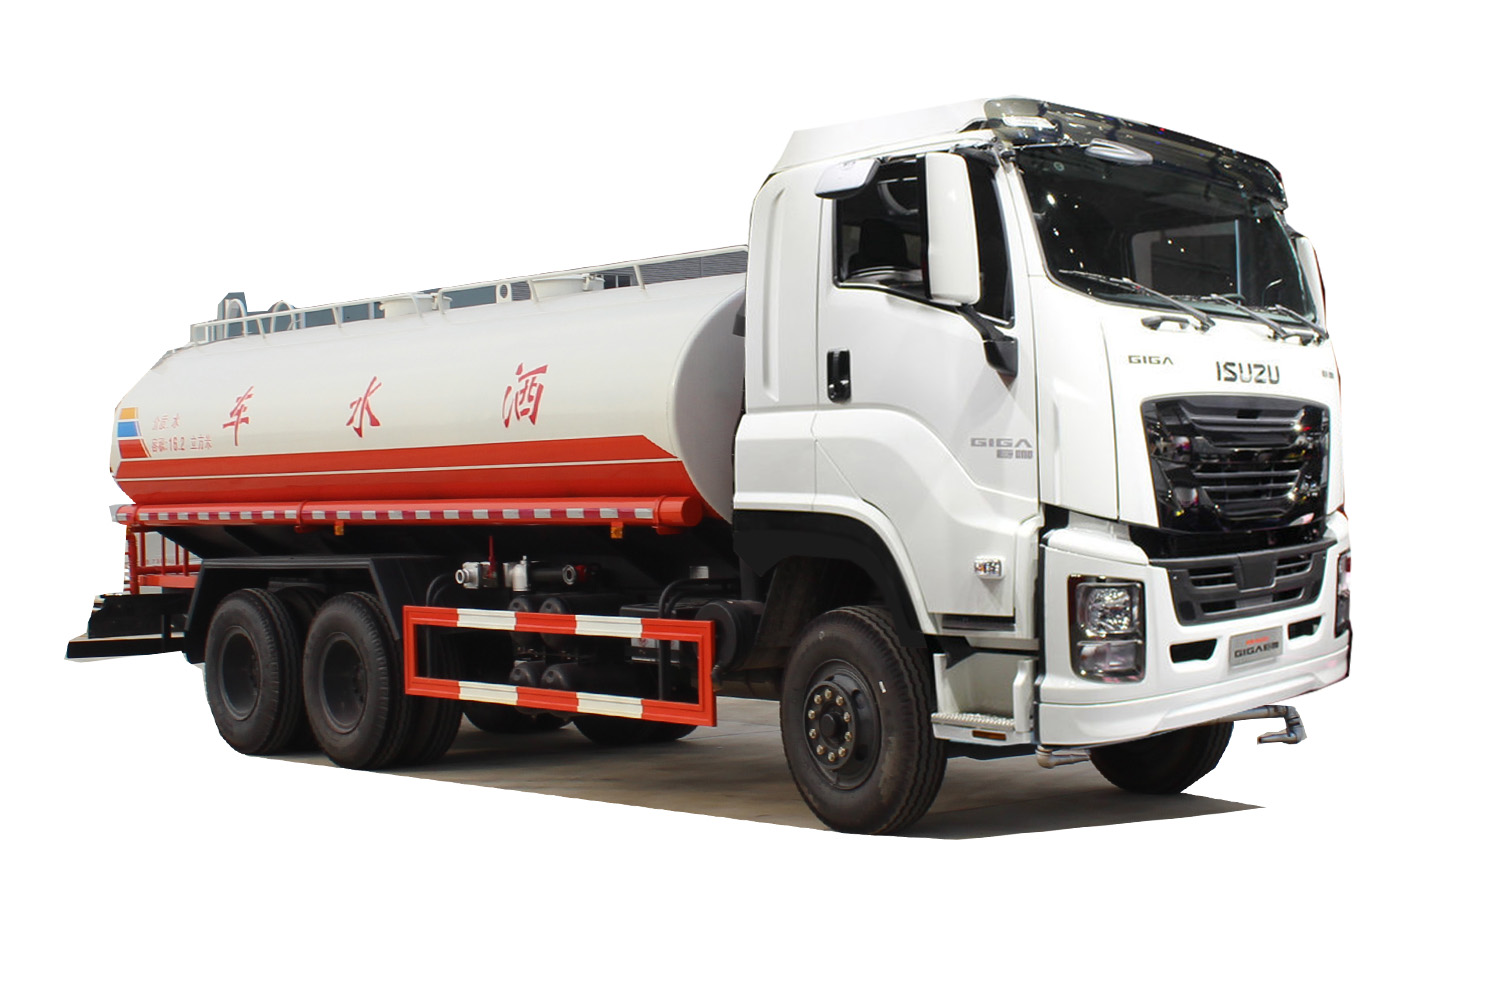 Isuzu giga  water bowser truck water tanker truck 20Tons